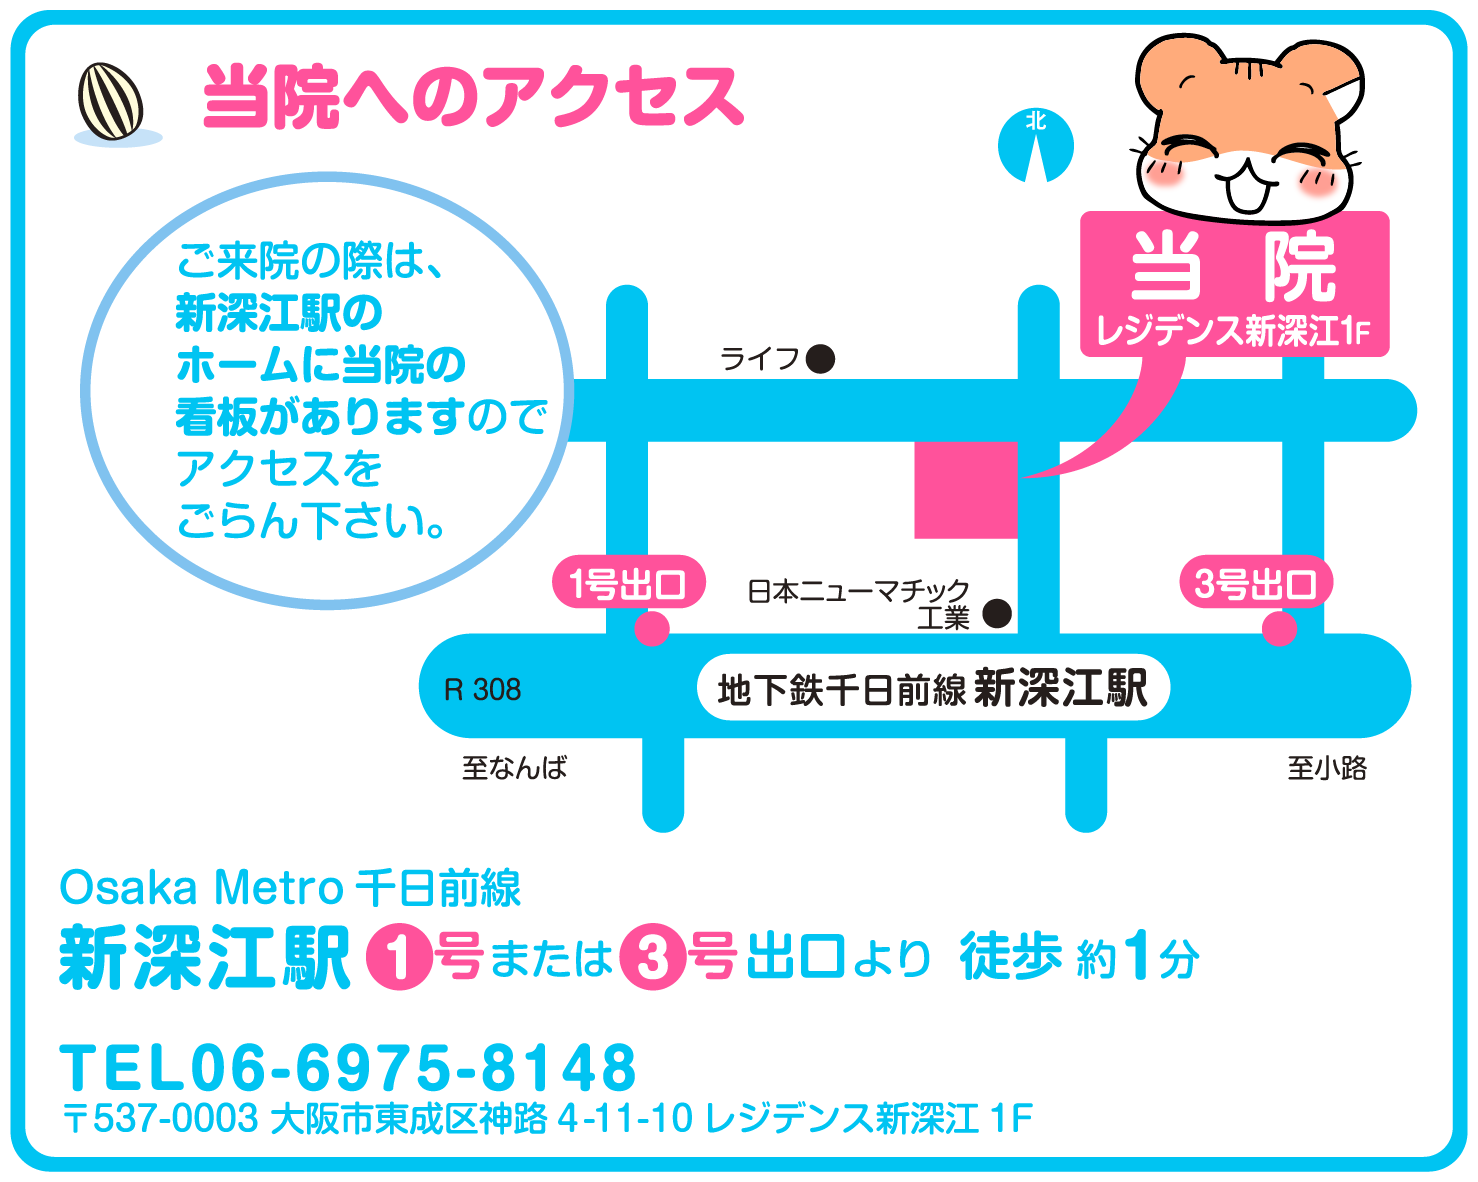 当院へのアクセス：ただの歯科は、地下鉄千日前線新深江駅1号または3号出口より北へ徒歩1分です。